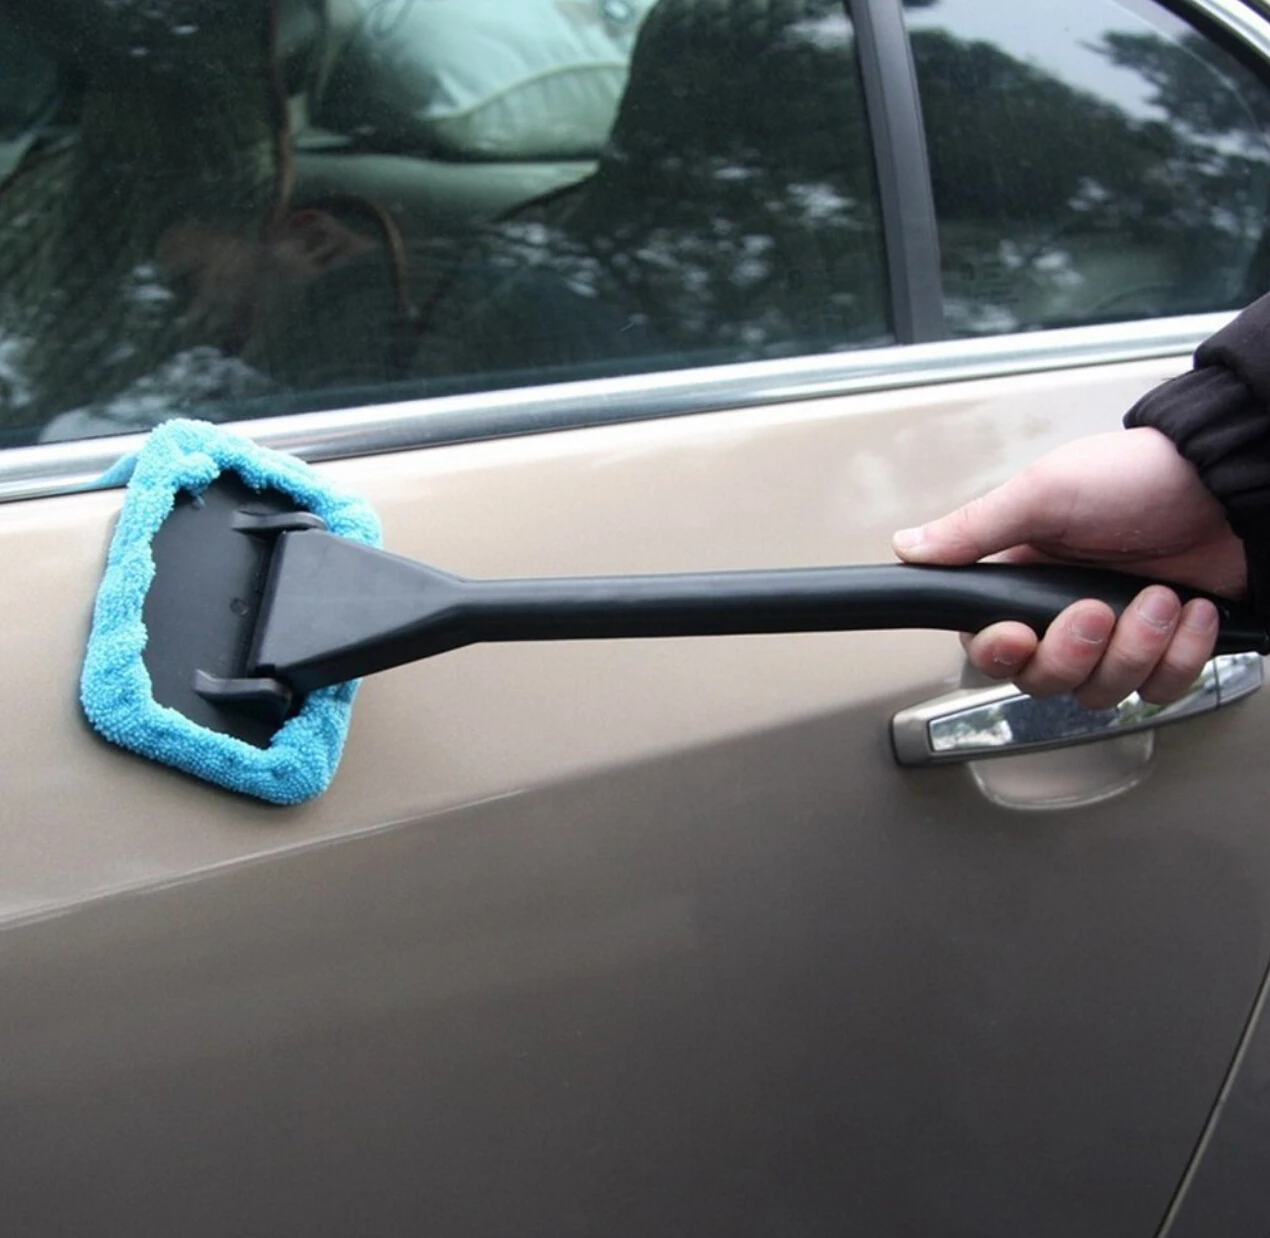 Очиститель автомобильных стекол щетка для мытья автомобиля для toyota chr cruze Acura TSX mazda cx7 outlander sport lexus is250 mazda 6 Infiniti g37